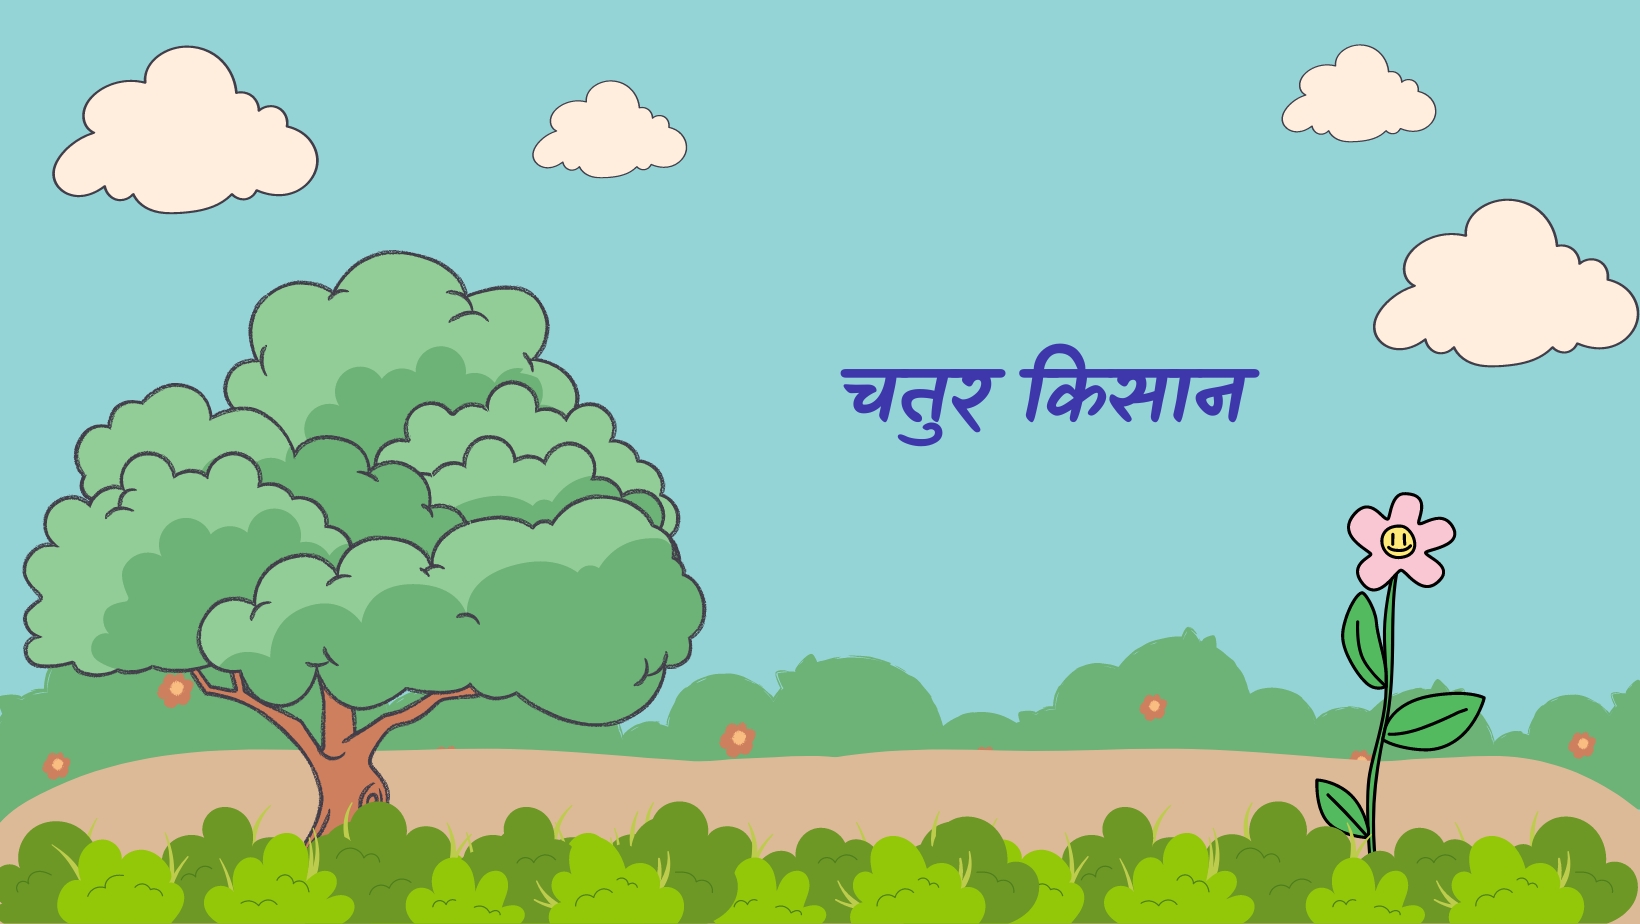 चतुर किसान | Chatur kishan by विकास